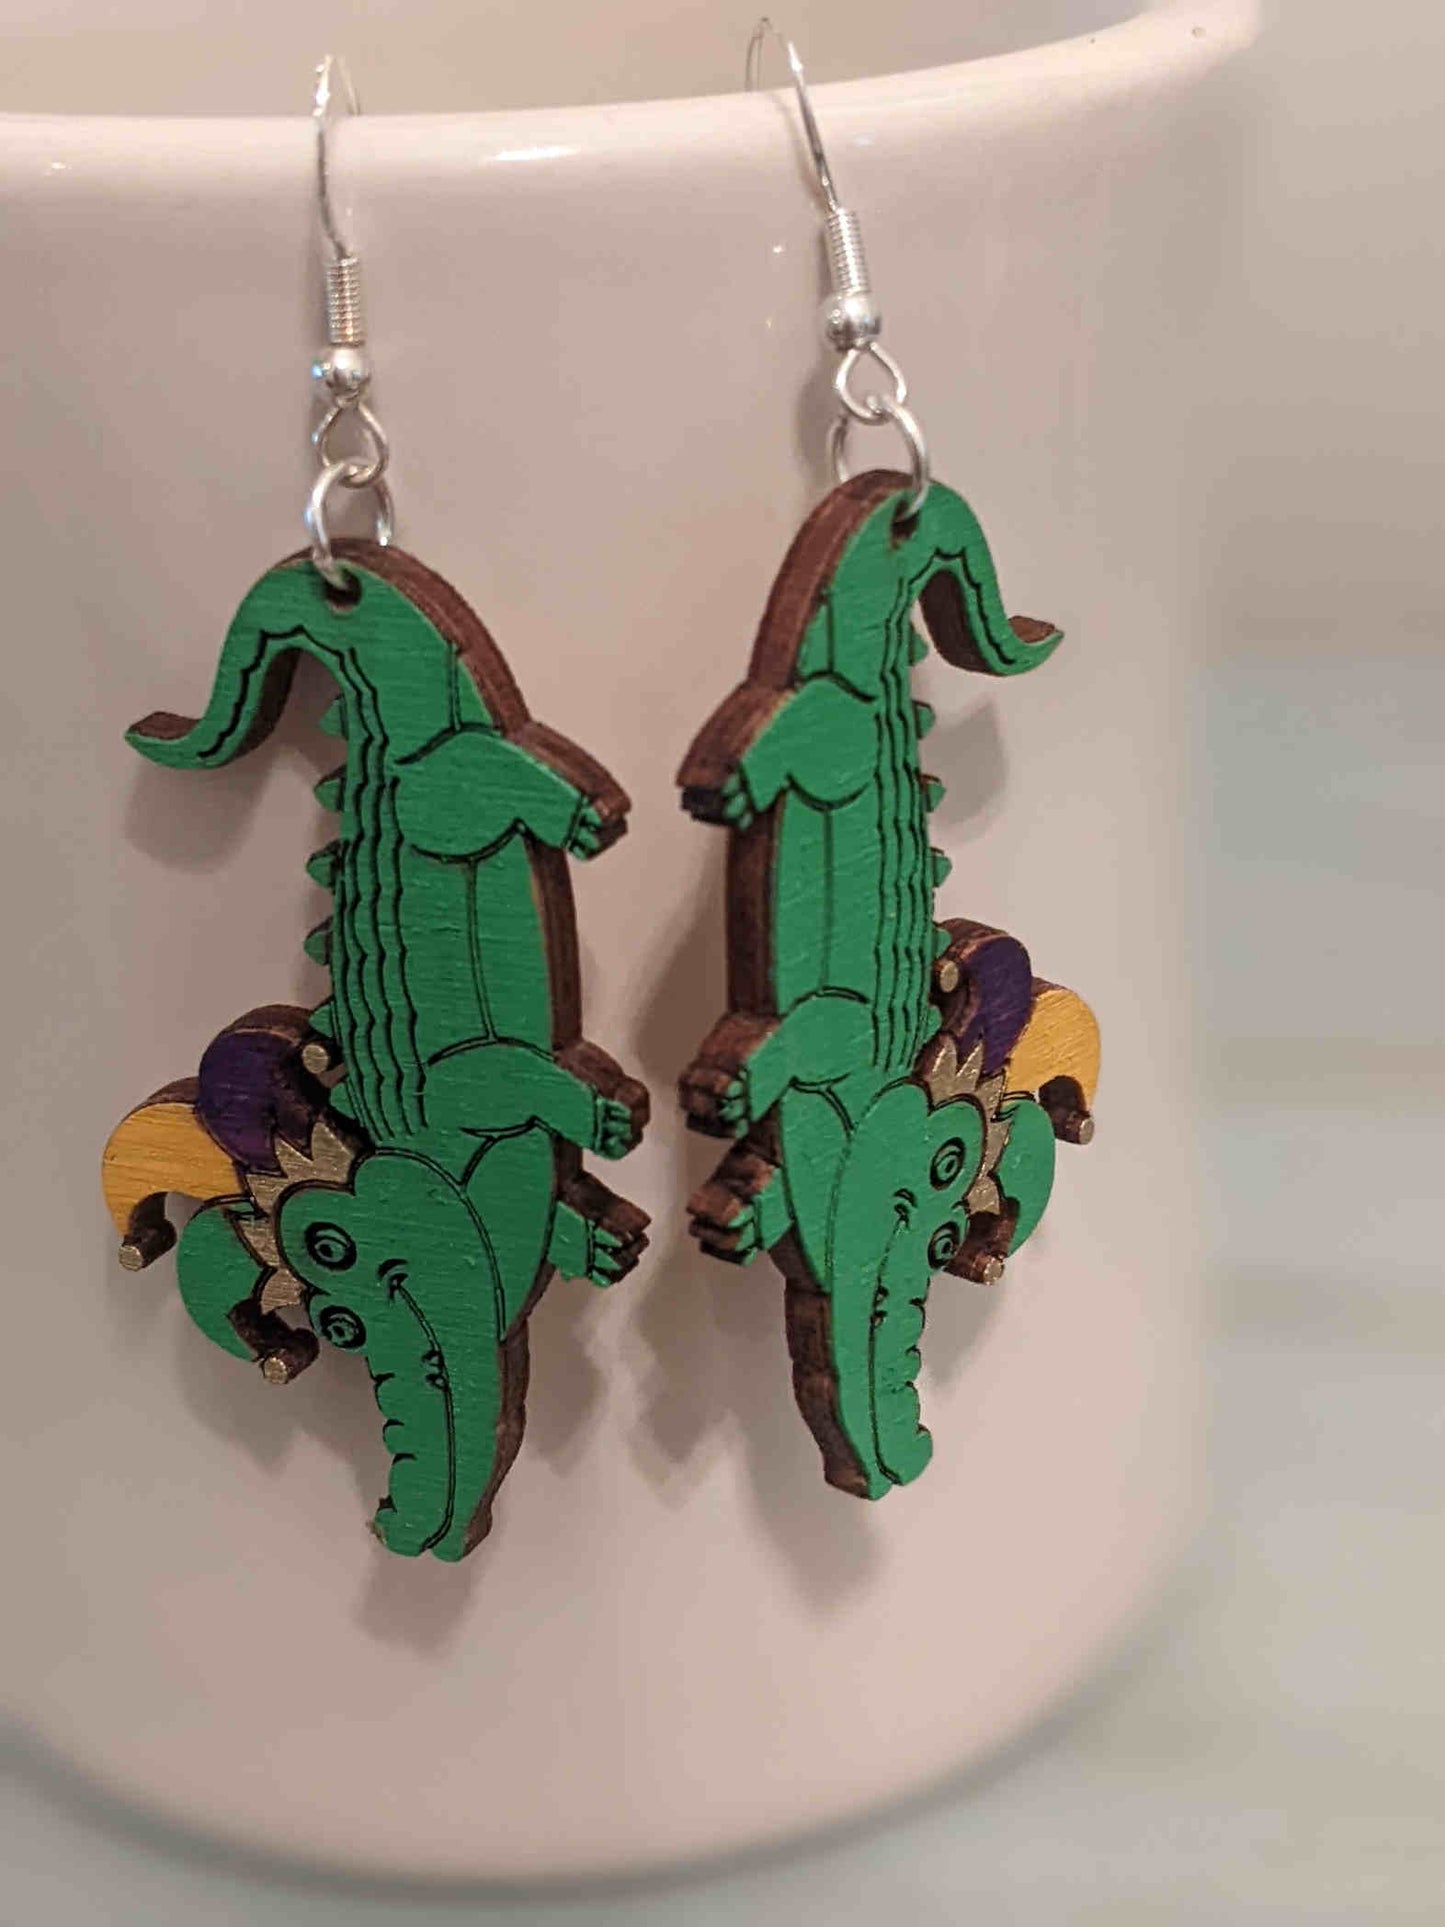 Alligator - Jester - Mardi Gras Earrings